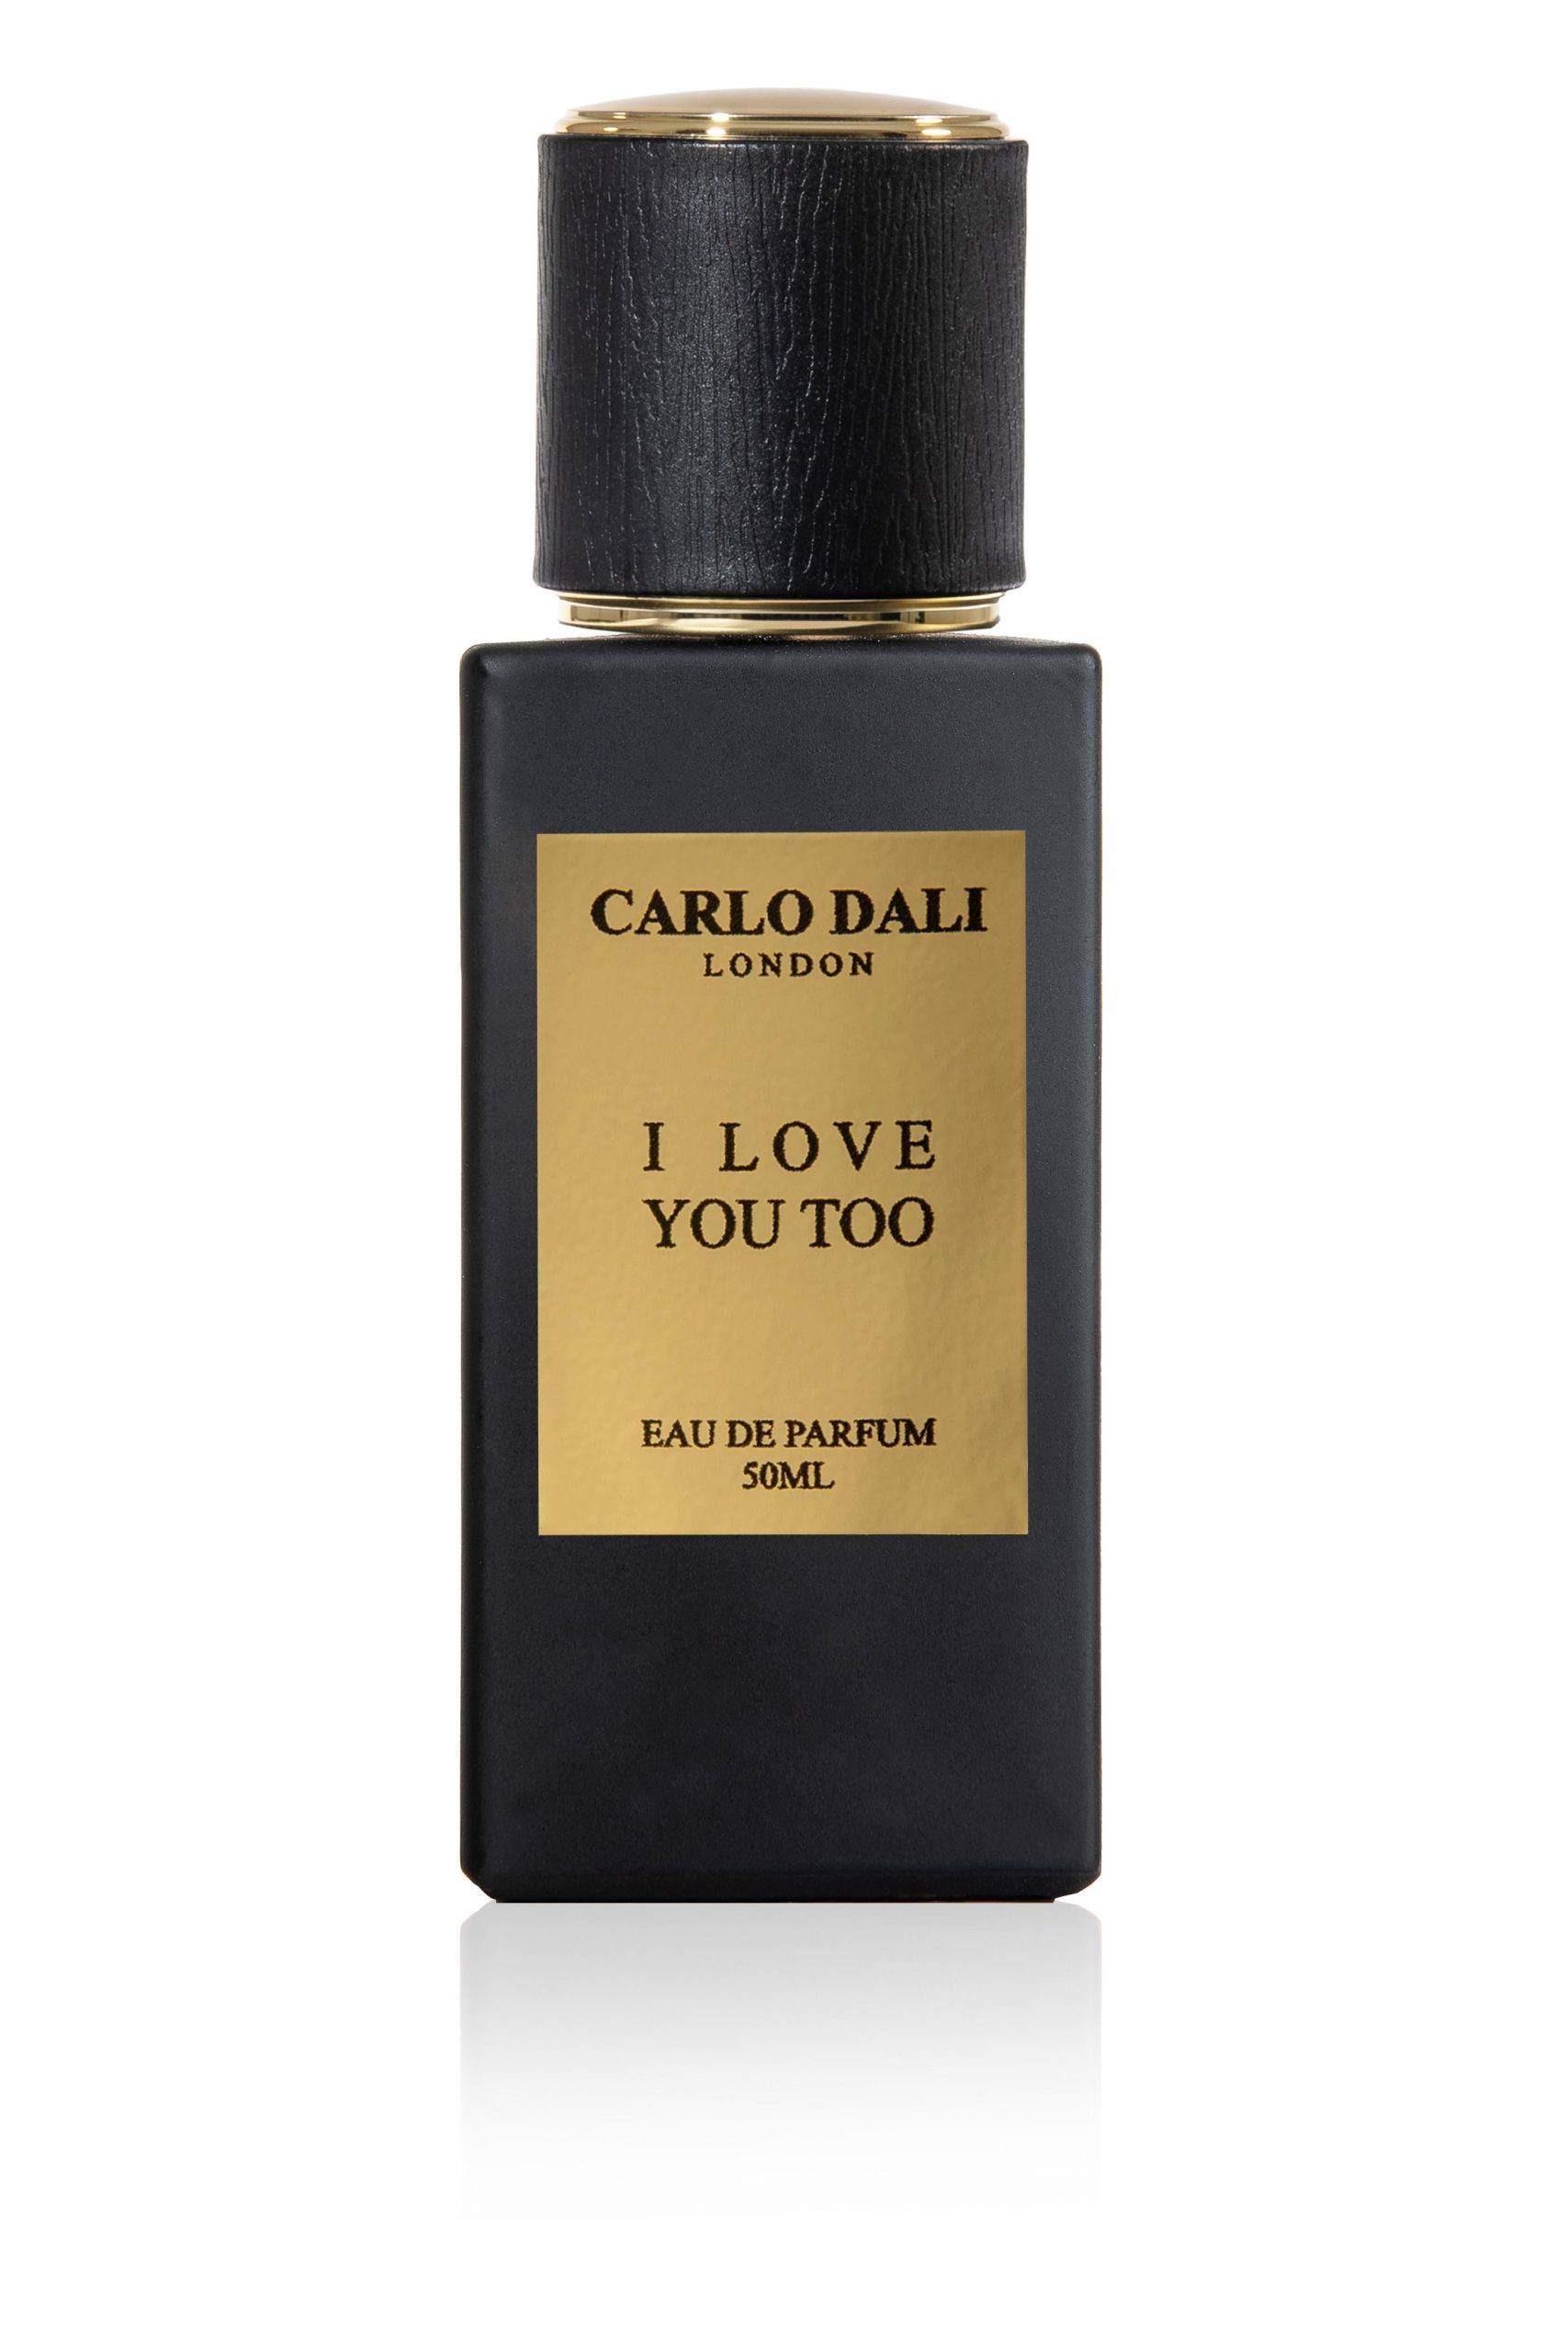 «I LOVE YOU TOO»  το μαγευτικό woody floral άρωμα από το διεθνές luxury brand CARLO DALI LONDON